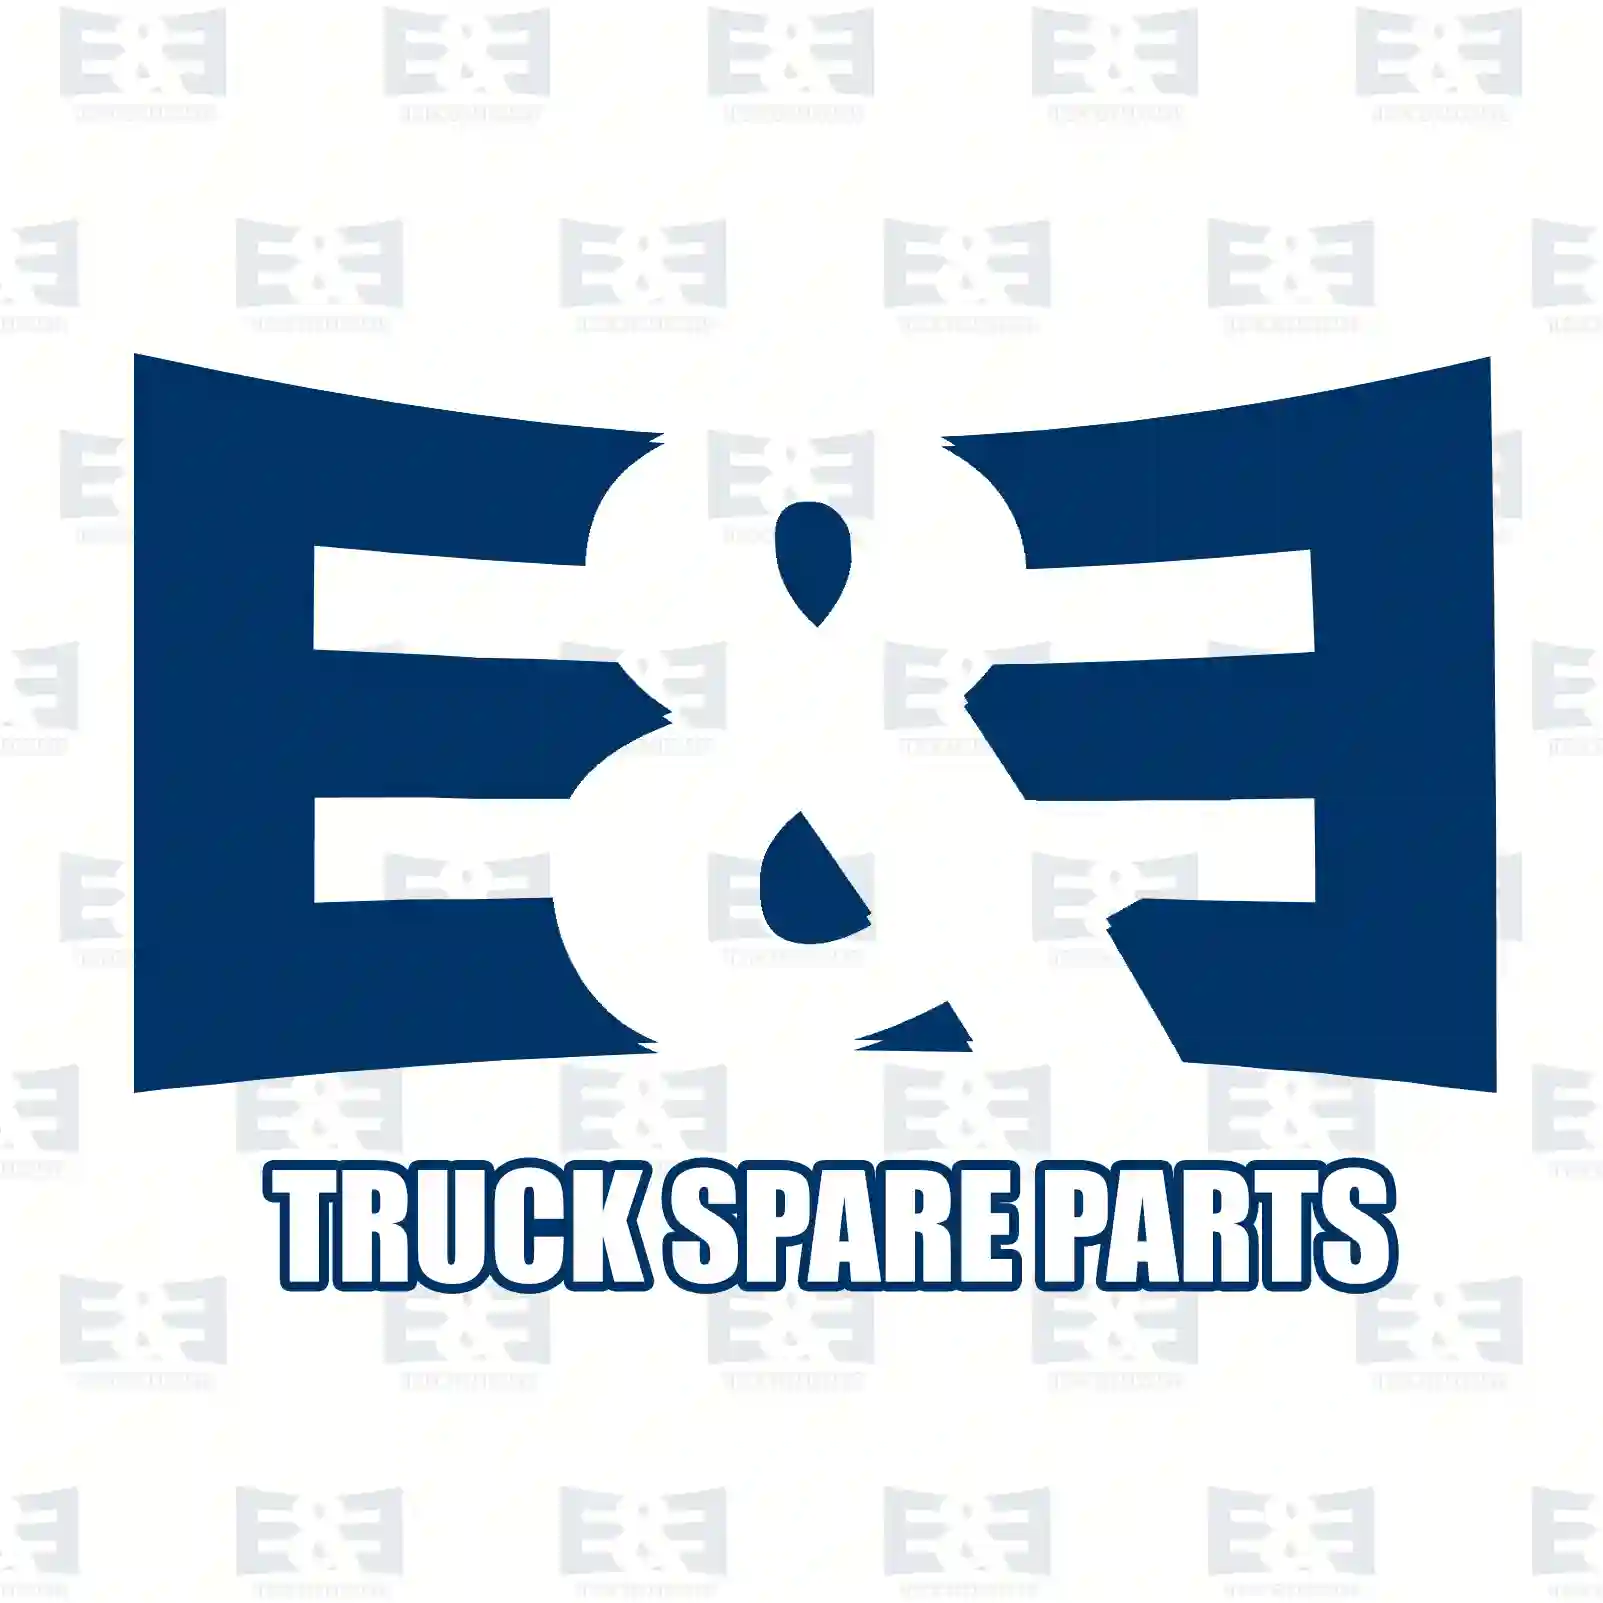 Gear, 3rd gear, 2E2276003, 1302785, 1853935 ||  2E2276003 E&E Truck Spare Parts | Truck Spare Parts, Auotomotive Spare Parts Gear, 3rd gear, 2E2276003, 1302785, 1853935 ||  2E2276003 E&E Truck Spare Parts | Truck Spare Parts, Auotomotive Spare Parts